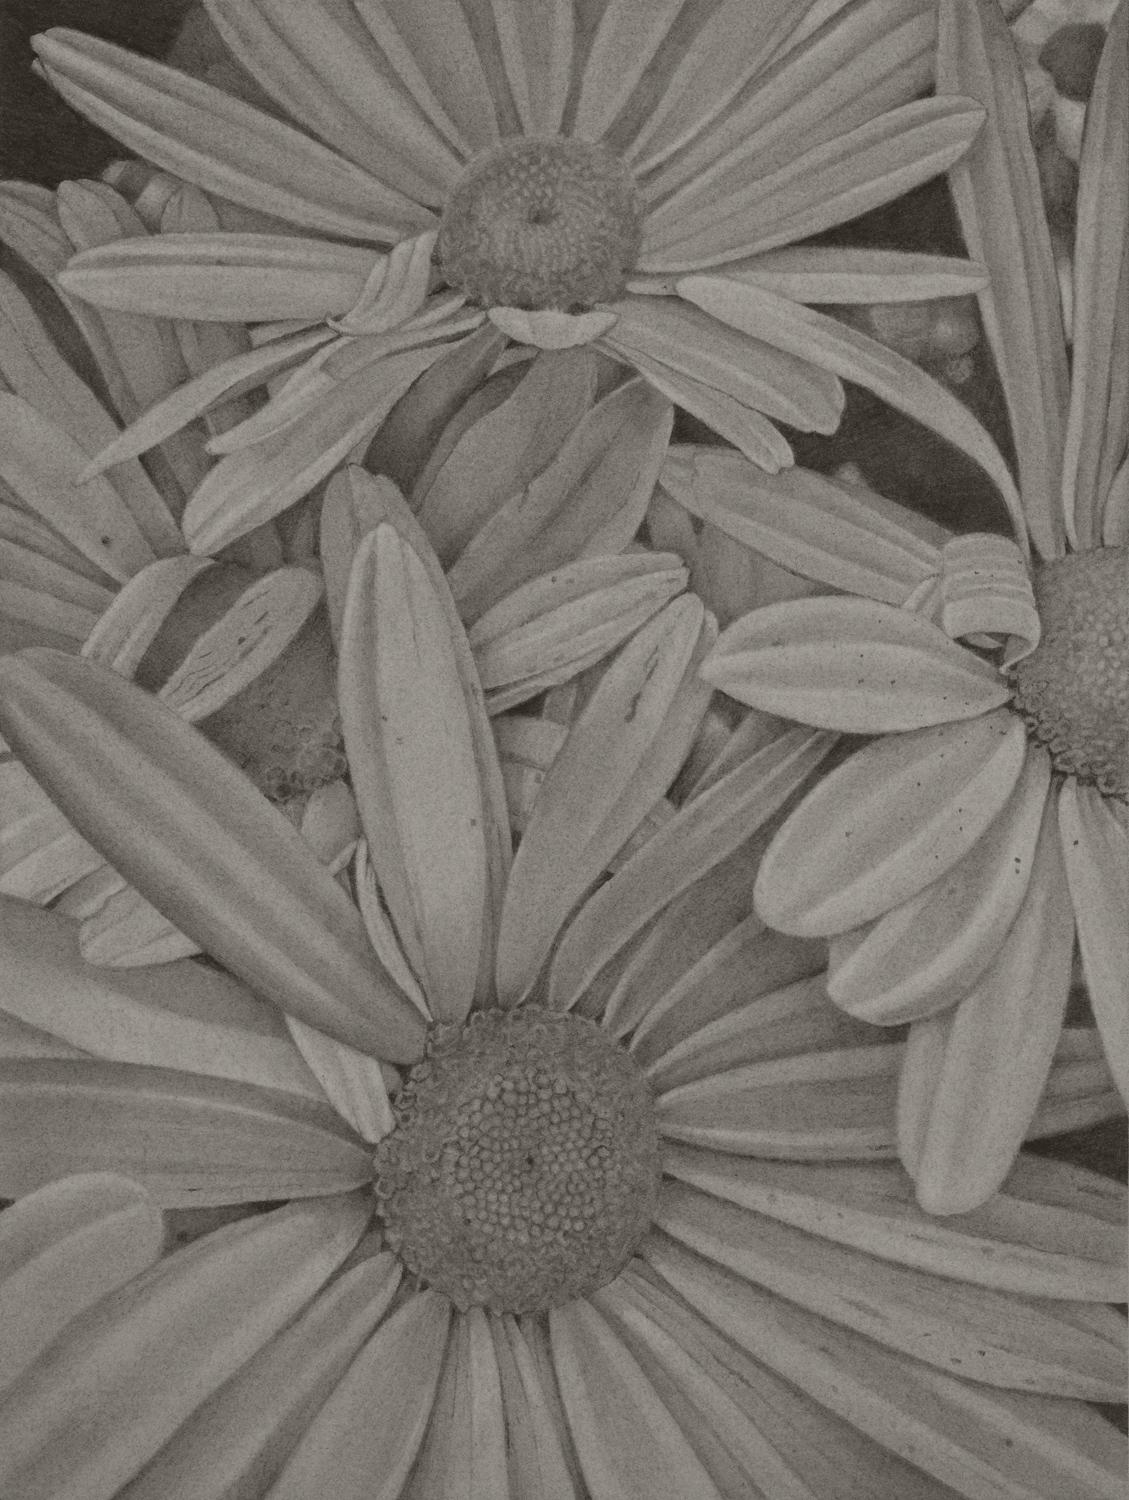 Daisies, dessin floral réaliste au graphite gris sur papier, 2020